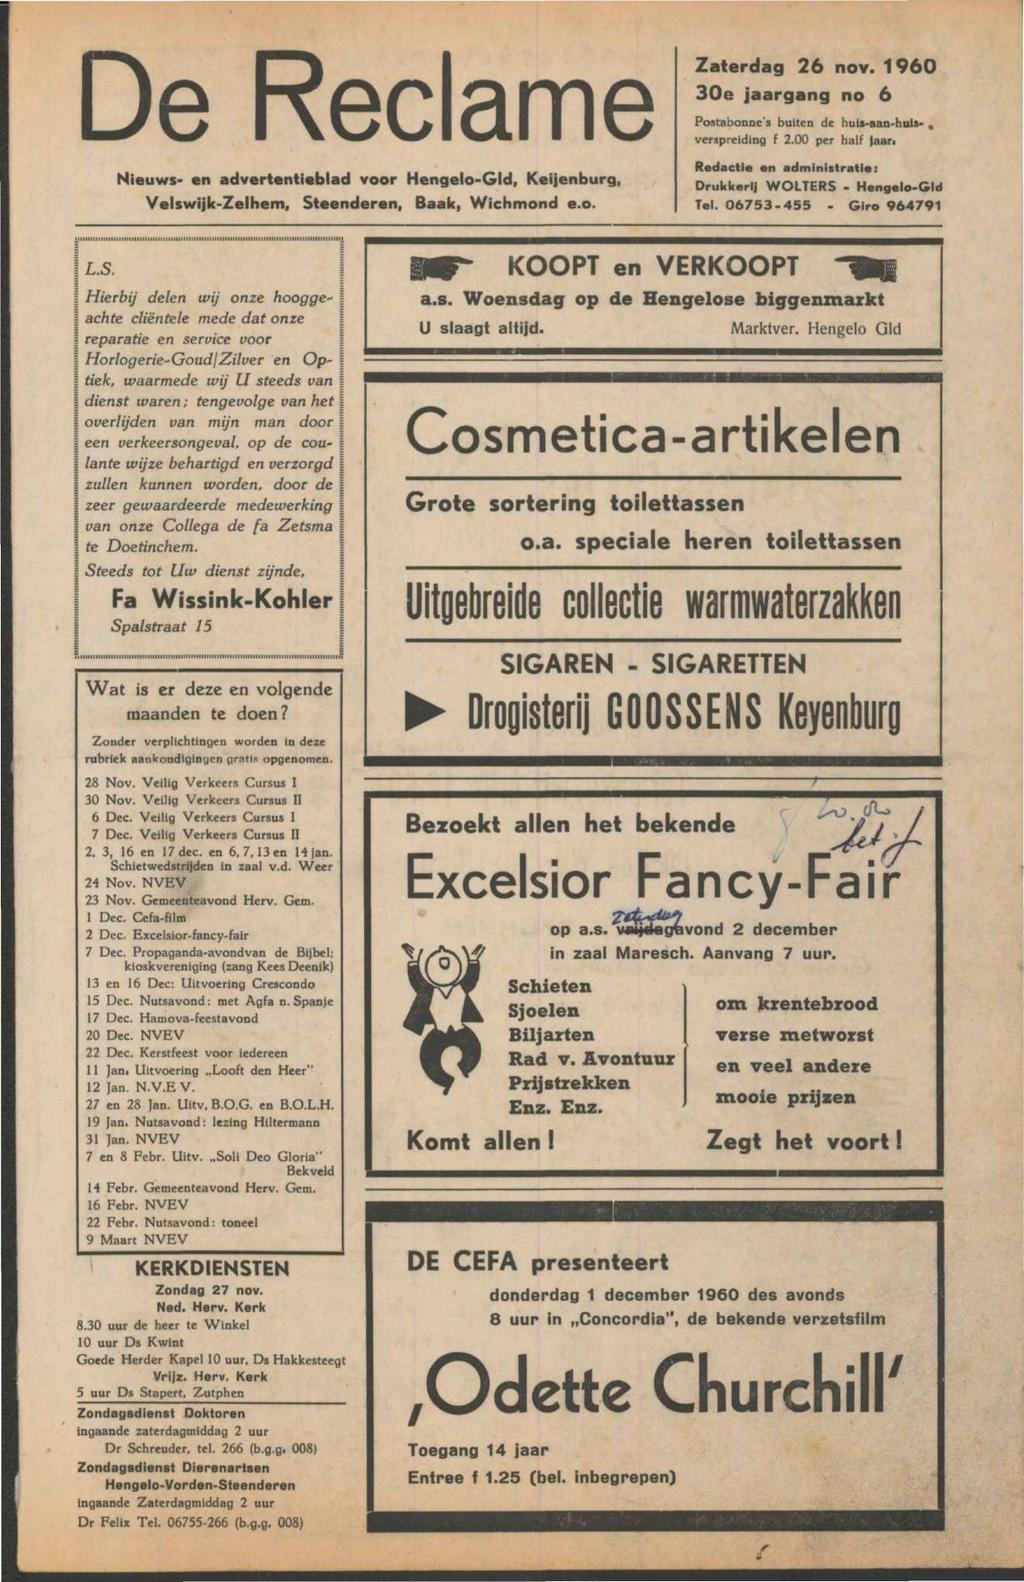 De Reclame Nieuws- en advertentieblad voor Hengelo-Gld, Keijenburg, Velswijk-Zelhem, Steenderen, Baak, Wichmond e.o. Zaterdag 26 nov. 1960 30e jaargang no 6 Postabonne's buiten de huii-aan-huis-.